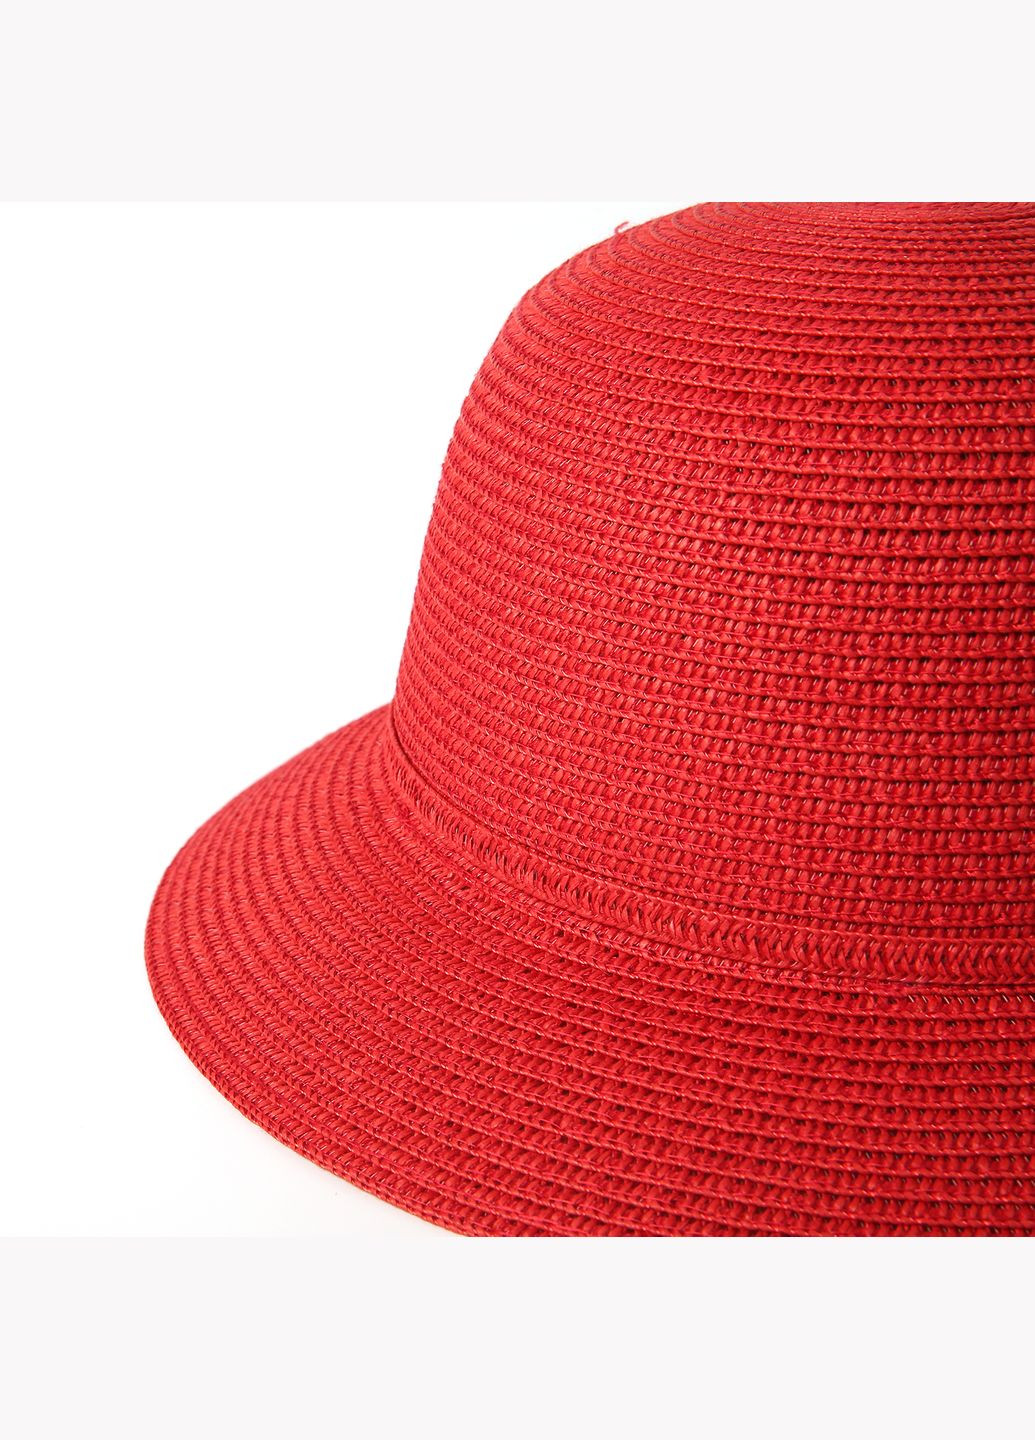 Шляпа с маленькими полями женская бумага красная VERONICA LuckyLOOK 844-026 (289478375)